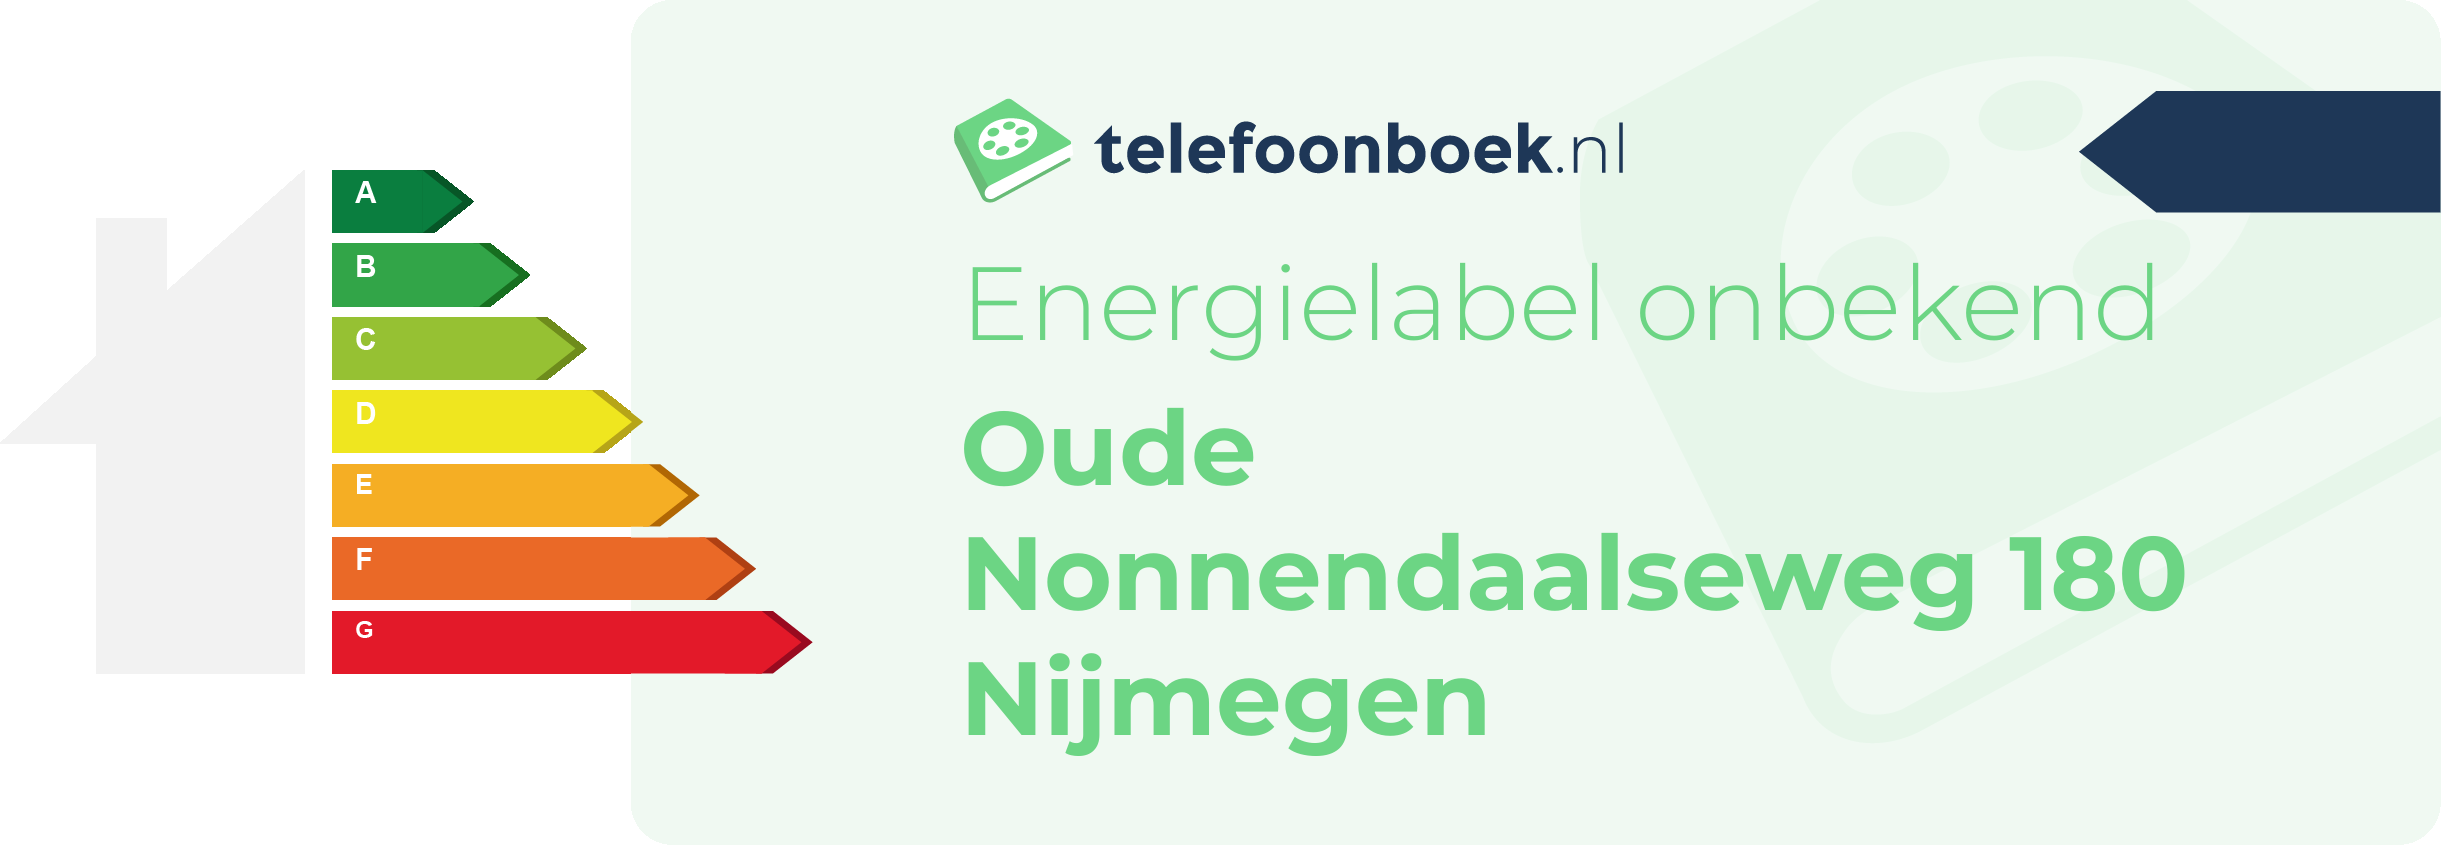 Energielabel Oude Nonnendaalseweg 180 Nijmegen